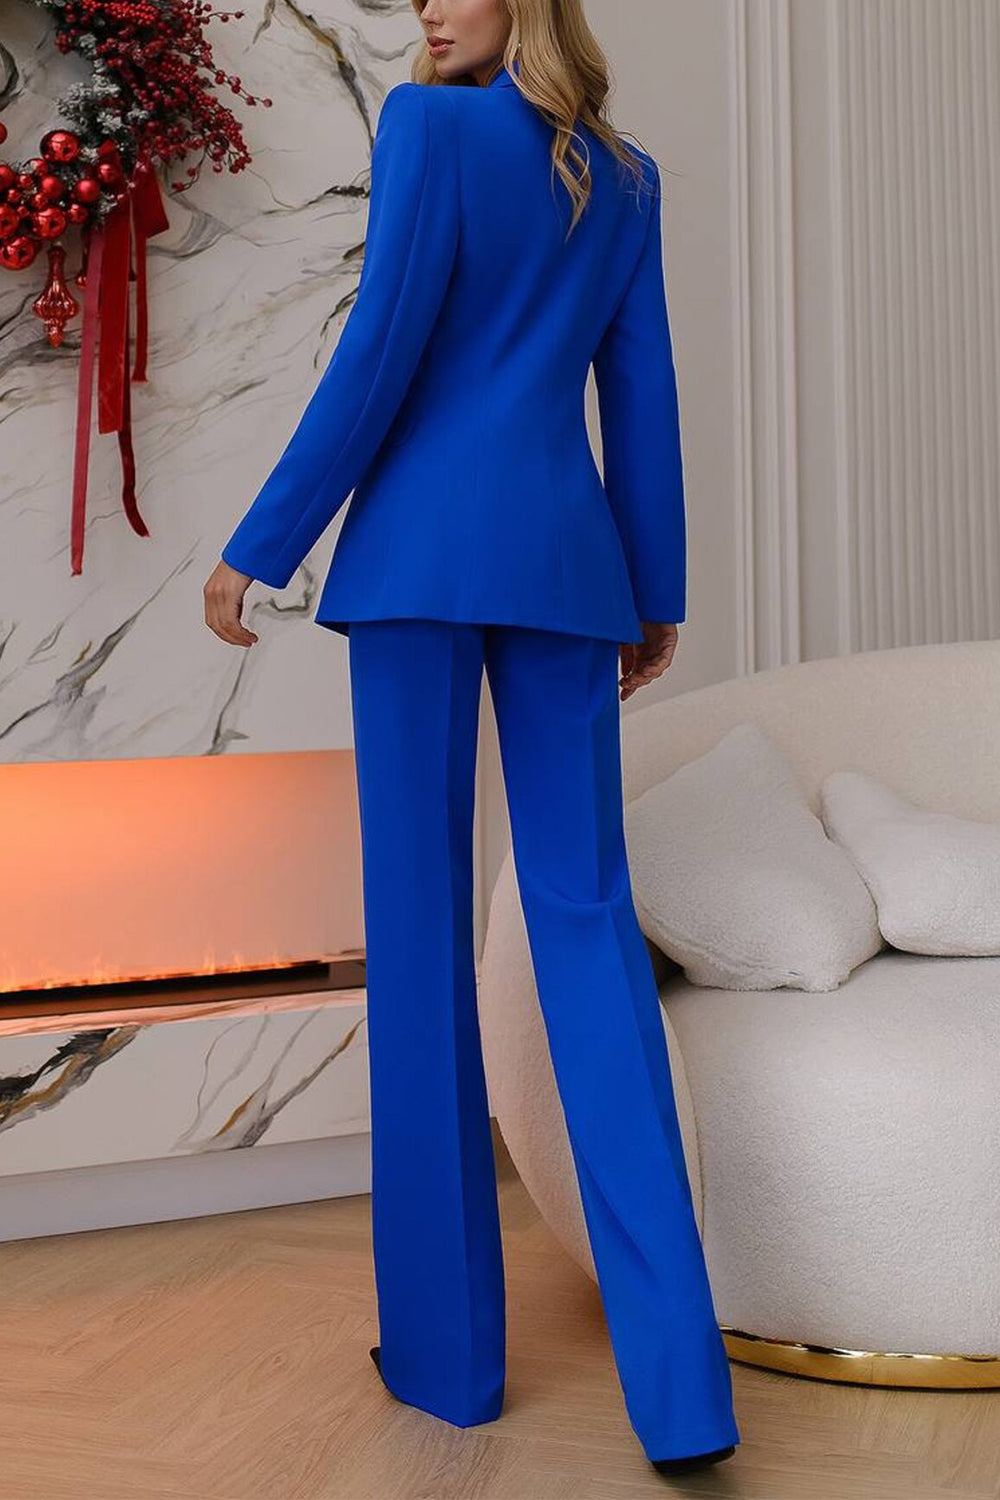 Royal Blue Business Casual Peak Lapel Women Suit 2 Piece